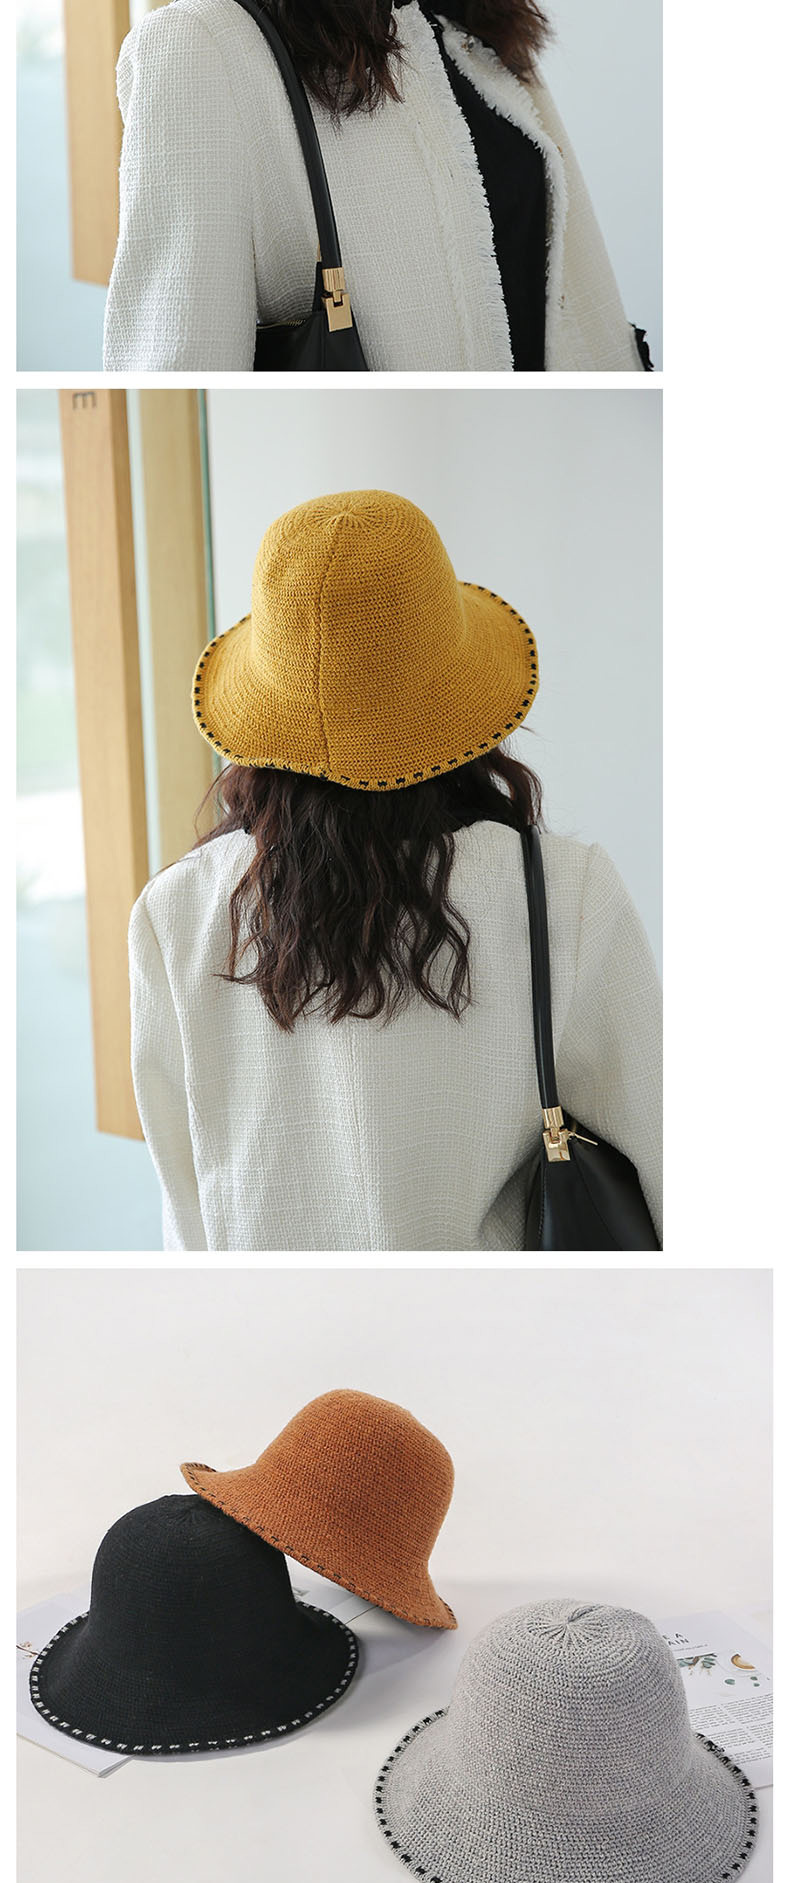 Fashion Yellow Knit Lace Fisherman Hat,Beanies&Others